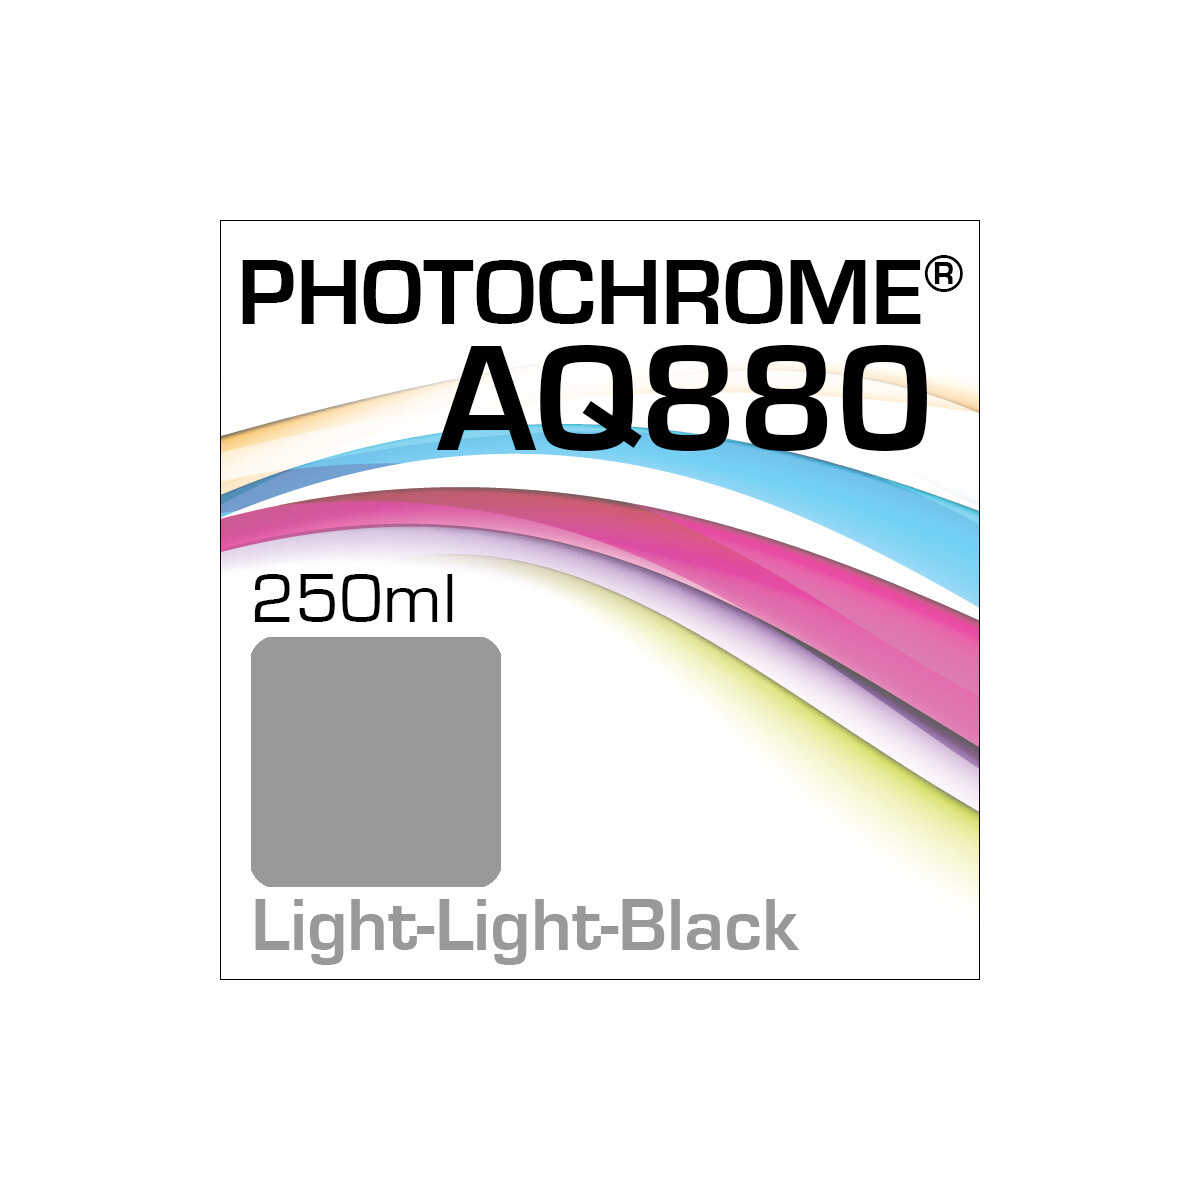 Lyson Photochrome AQ880 Bottle Light-Light-Black 250ml (EOL)